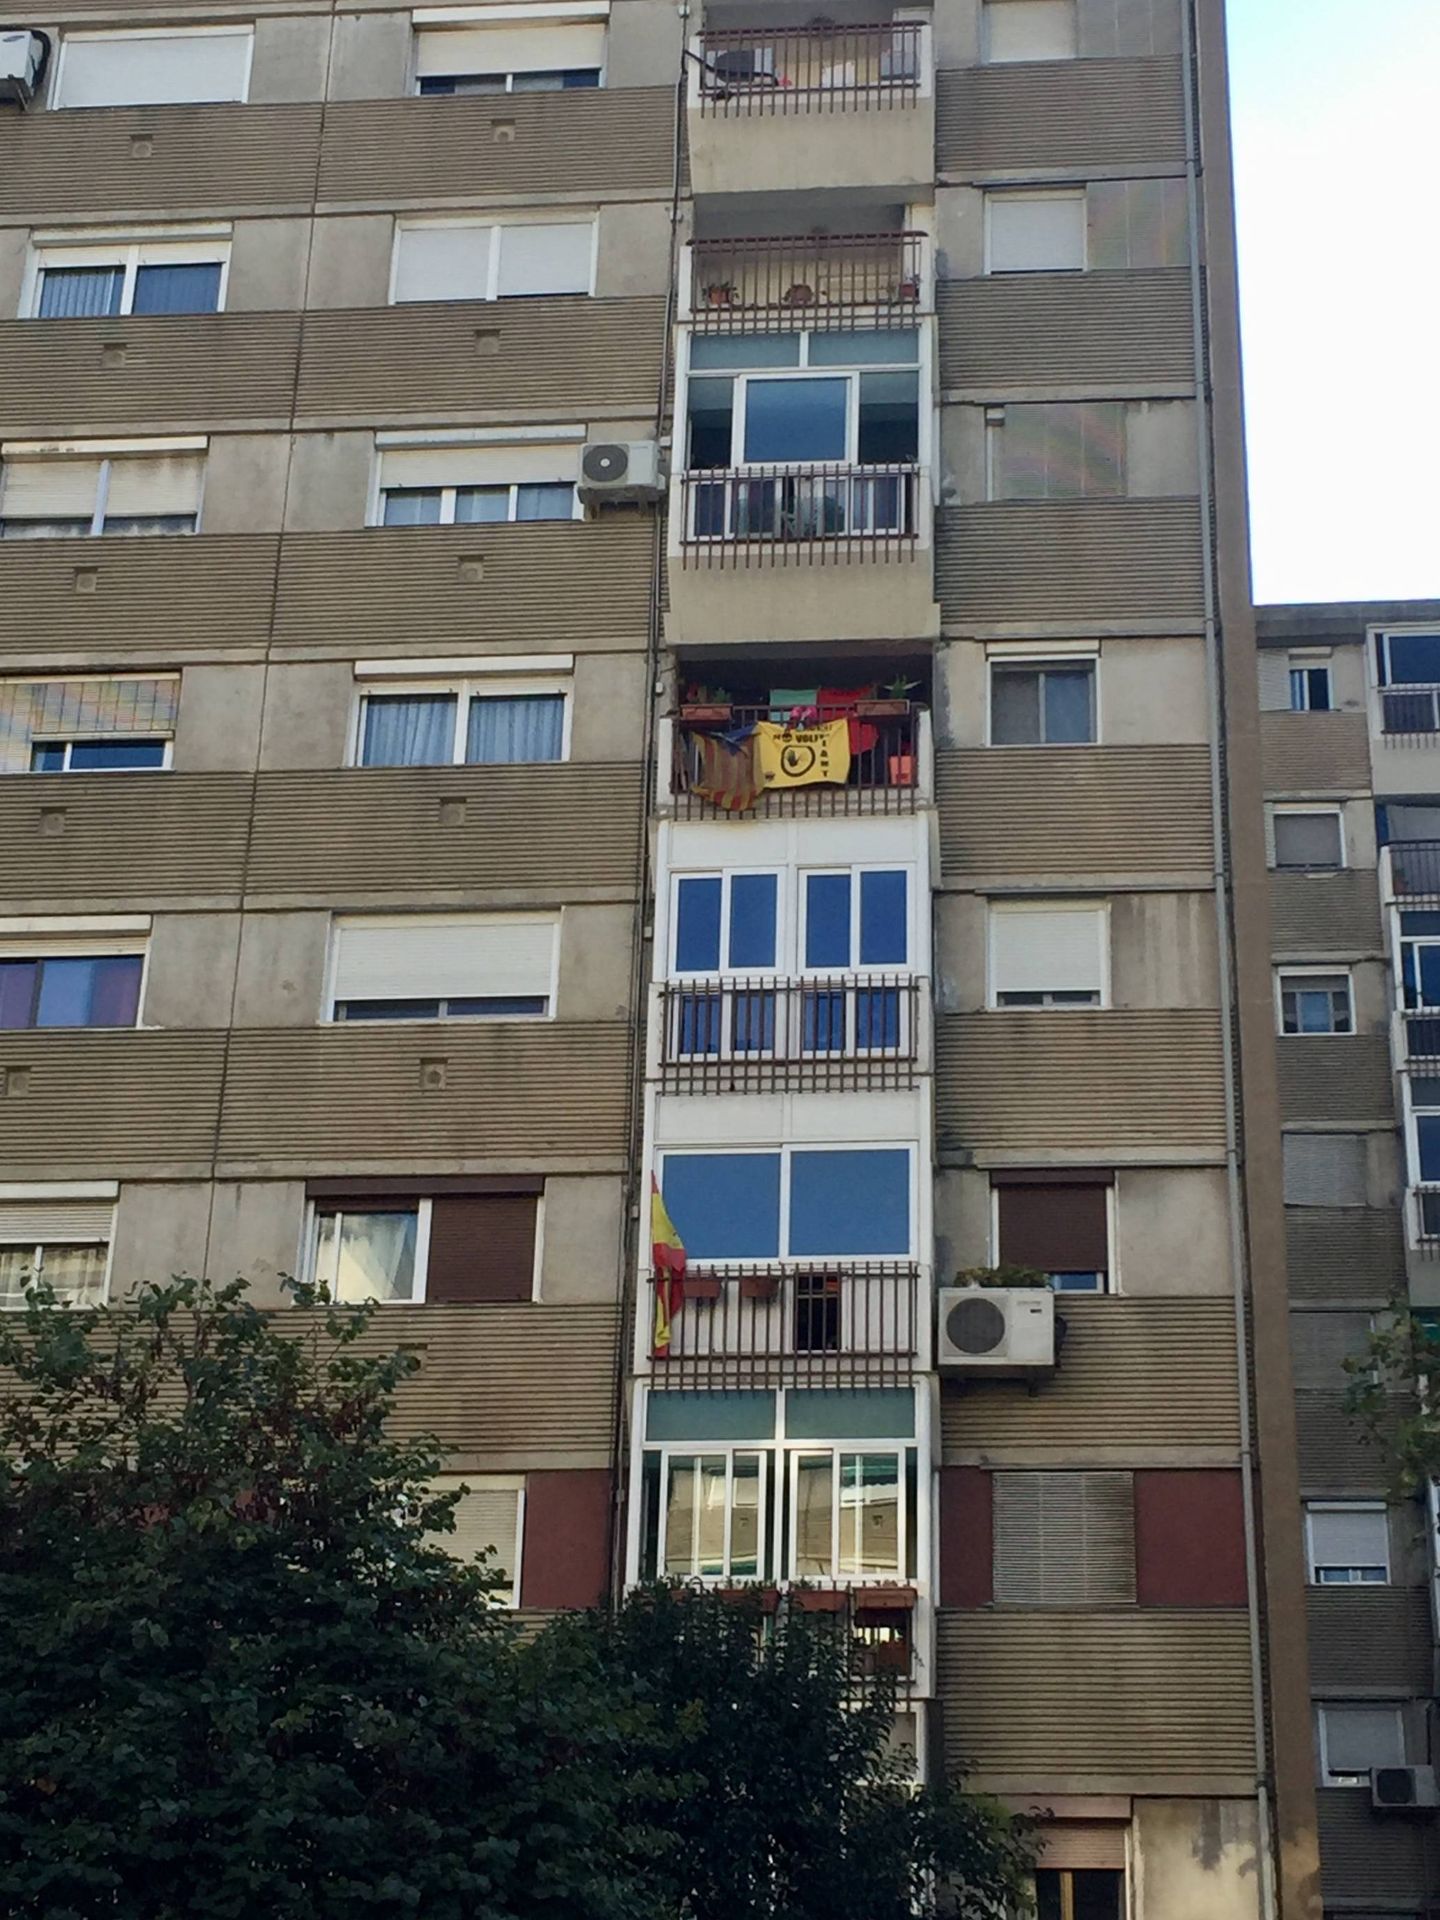 Una estelada y una bandera de España colgadas de los balcones de un bloque de viviendas en la avenida de Burgos de Badia, este 29 de septiembre. (J. R.)